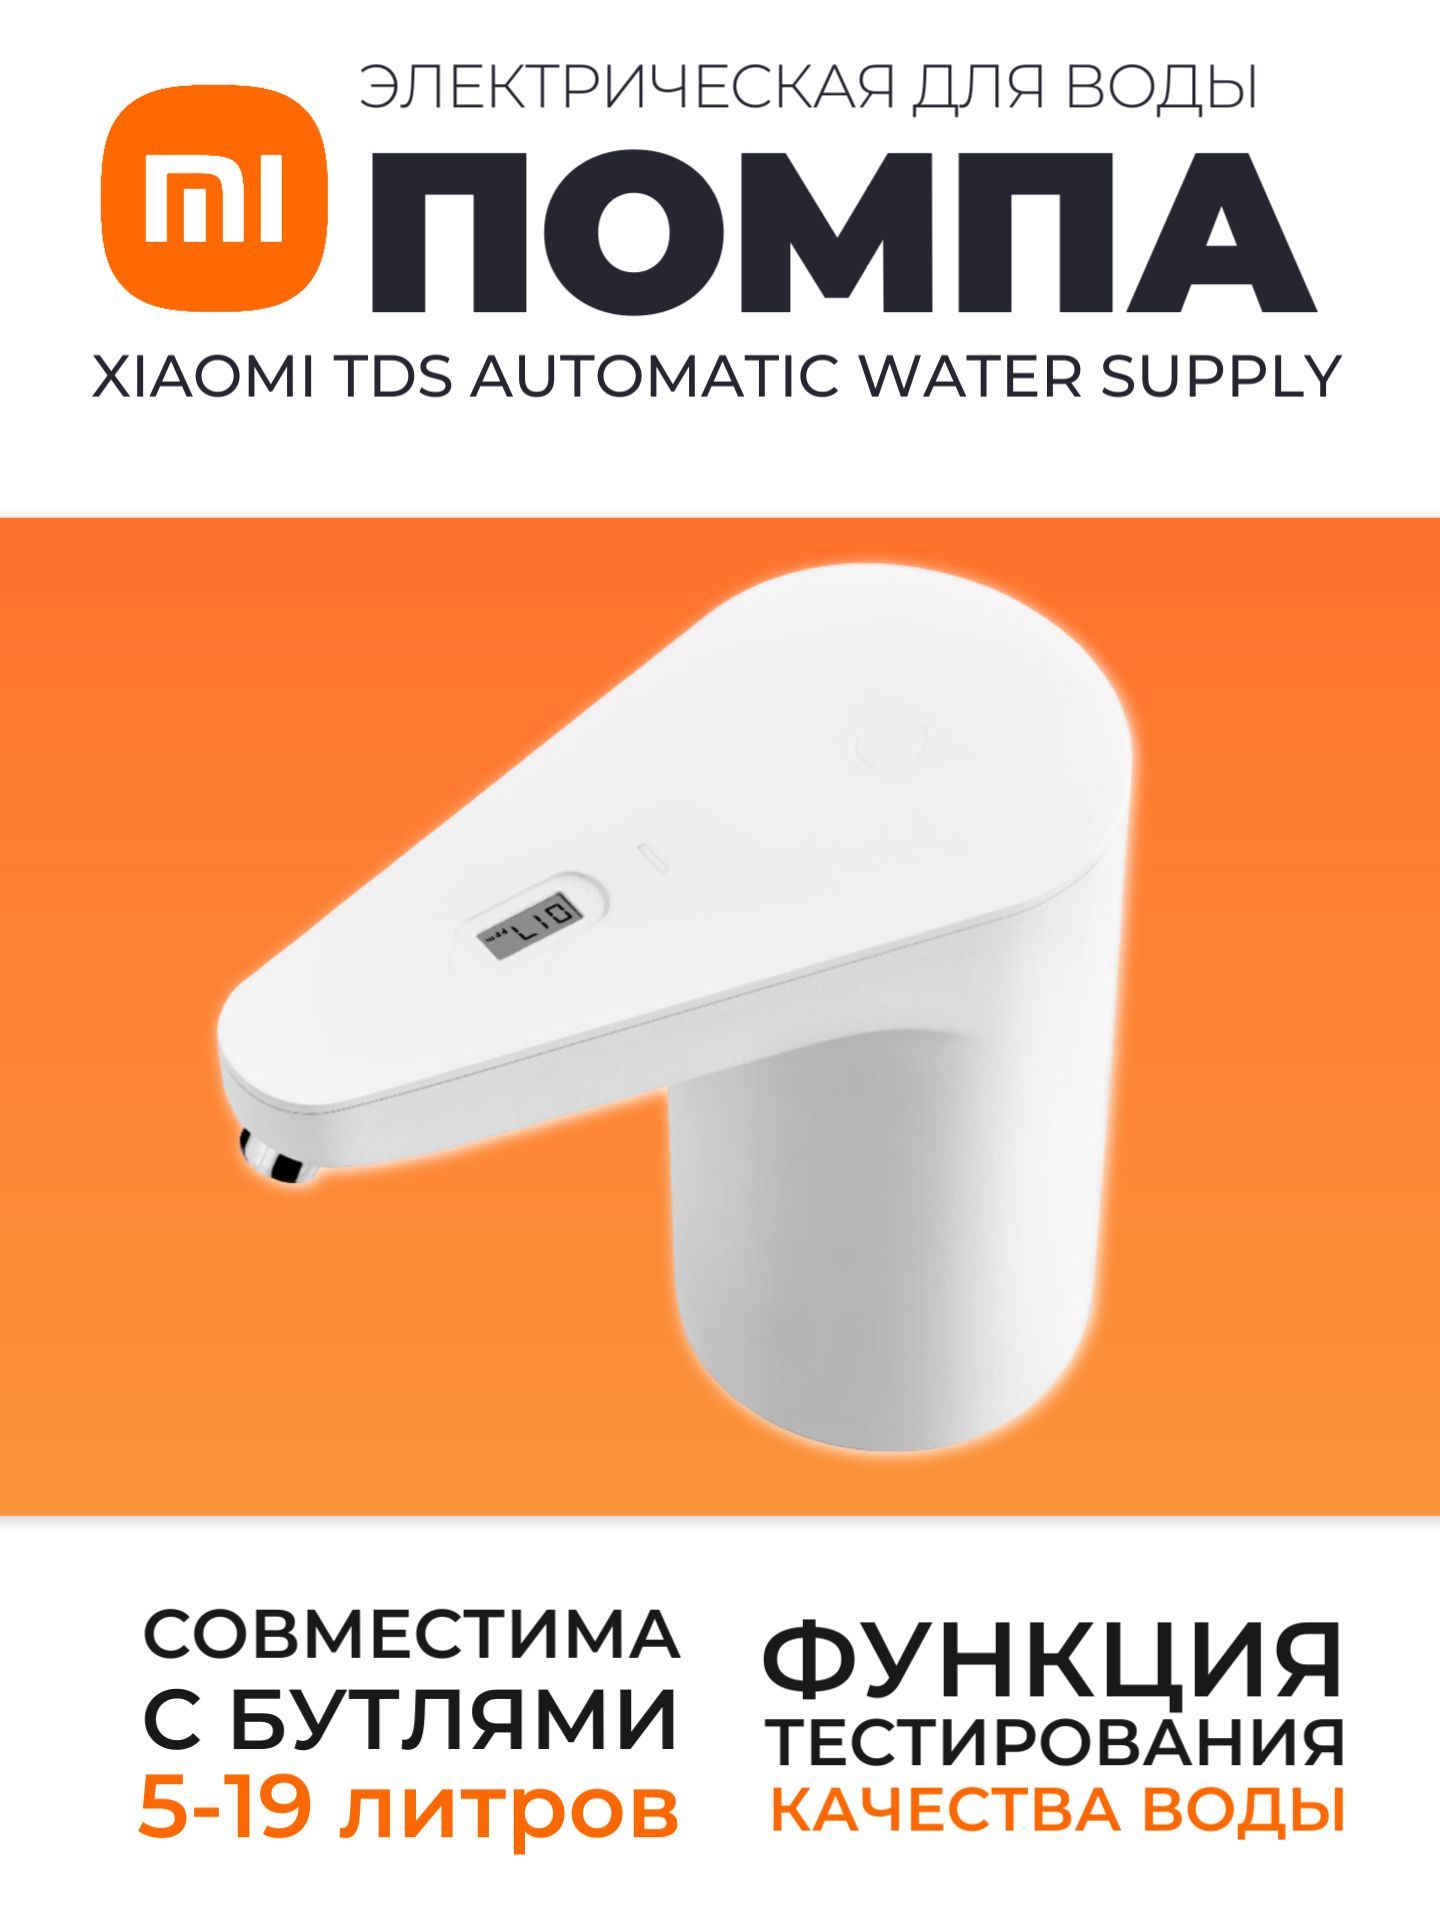 XiaomiэлектрическаяпомпасдатчикомкачестваводыTDSAutomaticWaterSupply(HD-ZDCSJ01)/Автоматическаяпомпадиспенсердлябутилированнойводы,белый